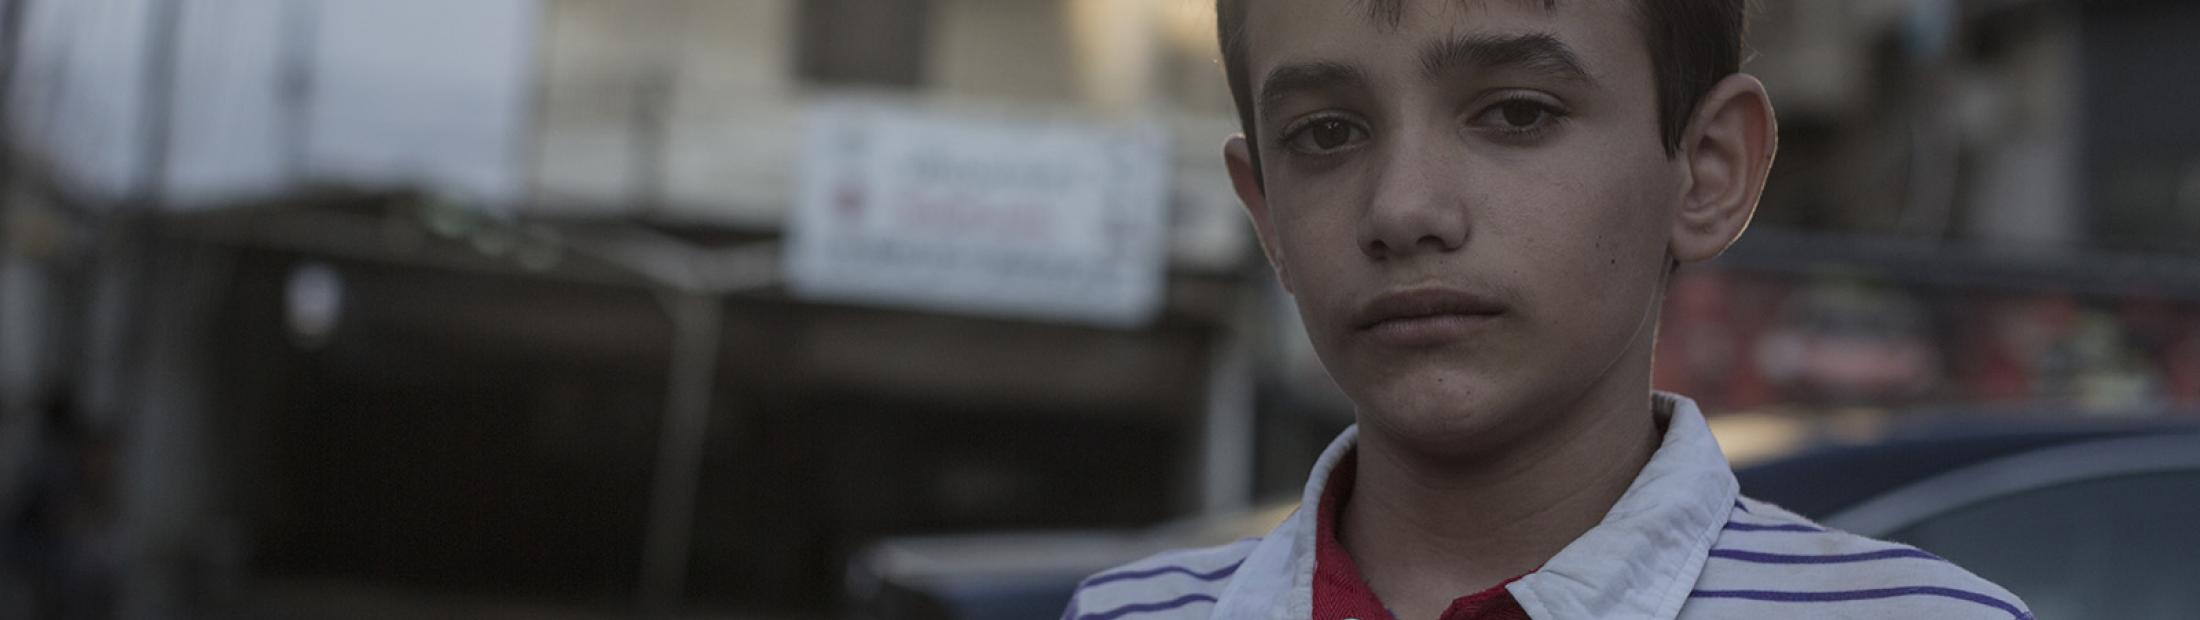 El Slumdog Millionaire sirio: de refugiado a la alfombra roja